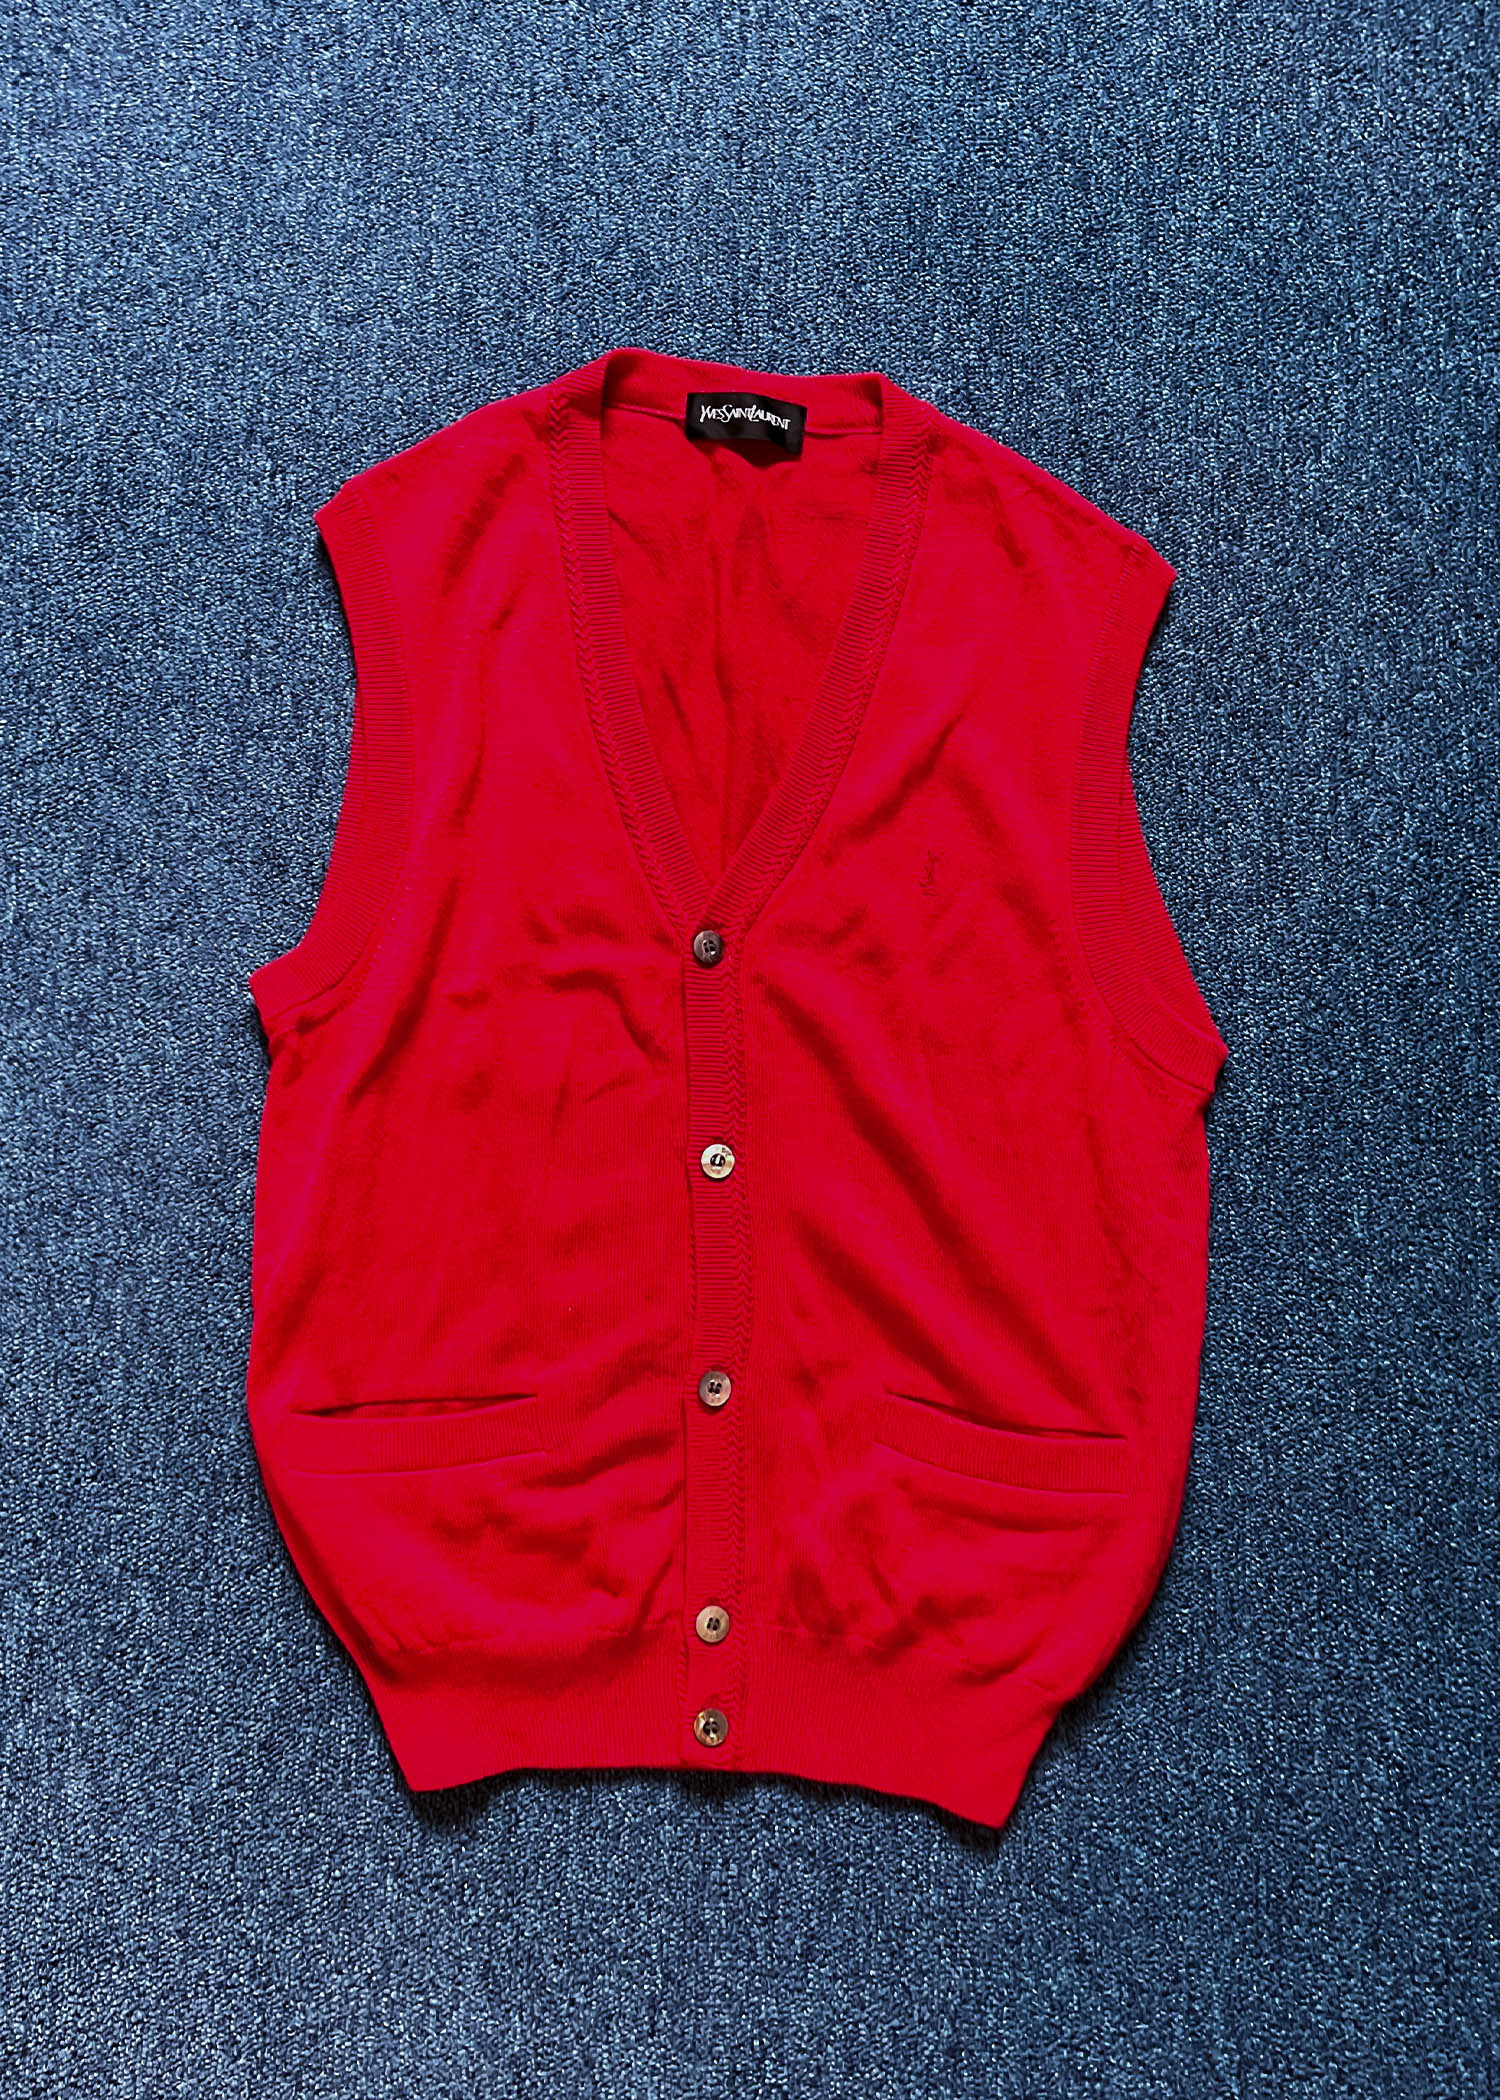 Yves Saint Laurent red knit vest